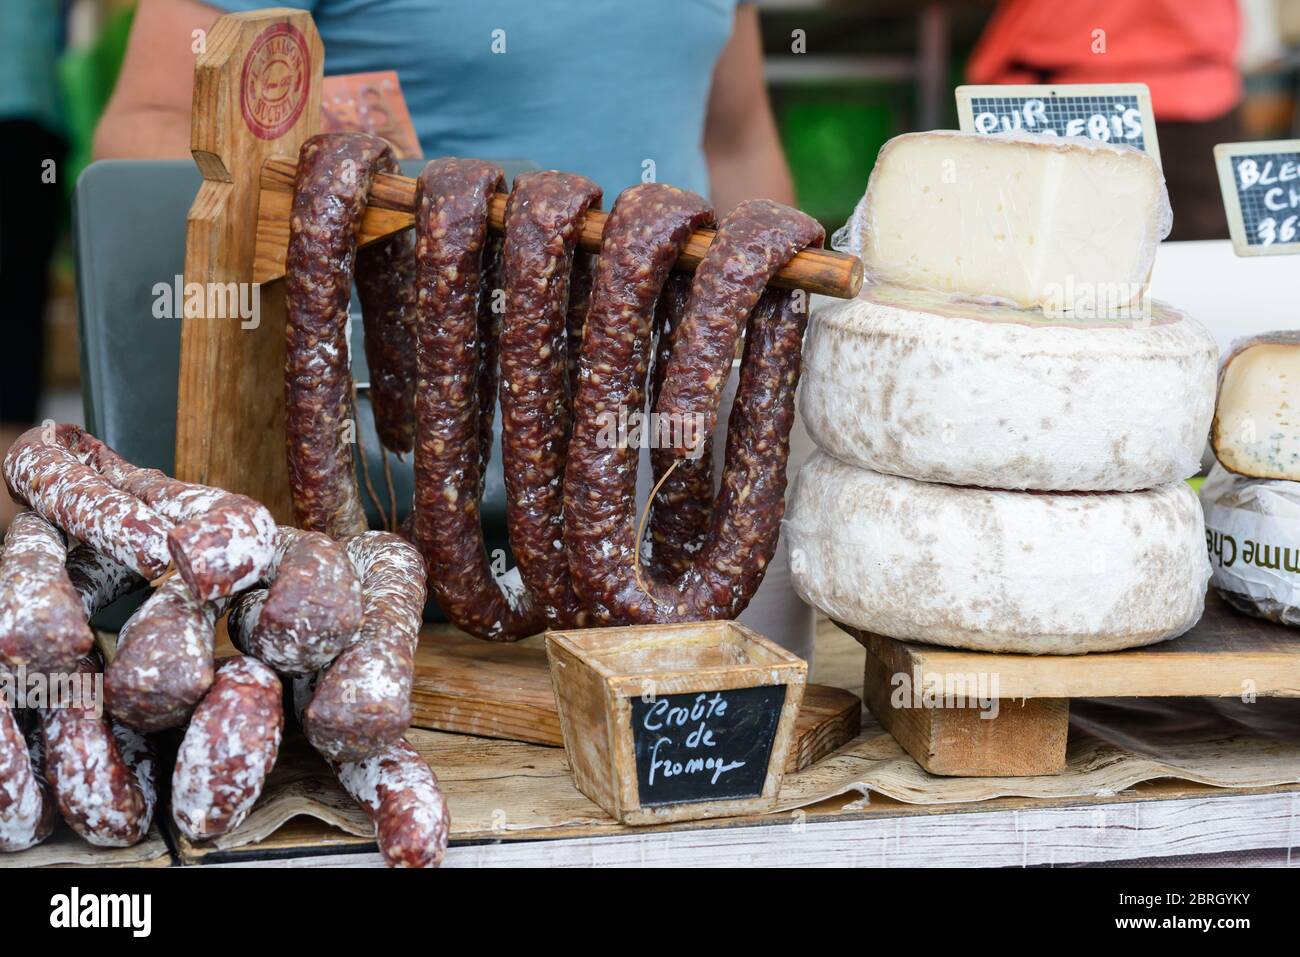 Saint-Palais-sur-Mer, Charente-Maritime / Francia: Varie salsicce francesi secche salate (saucisson) e ruote di formaggio disposti su un mercato. Foto Stock